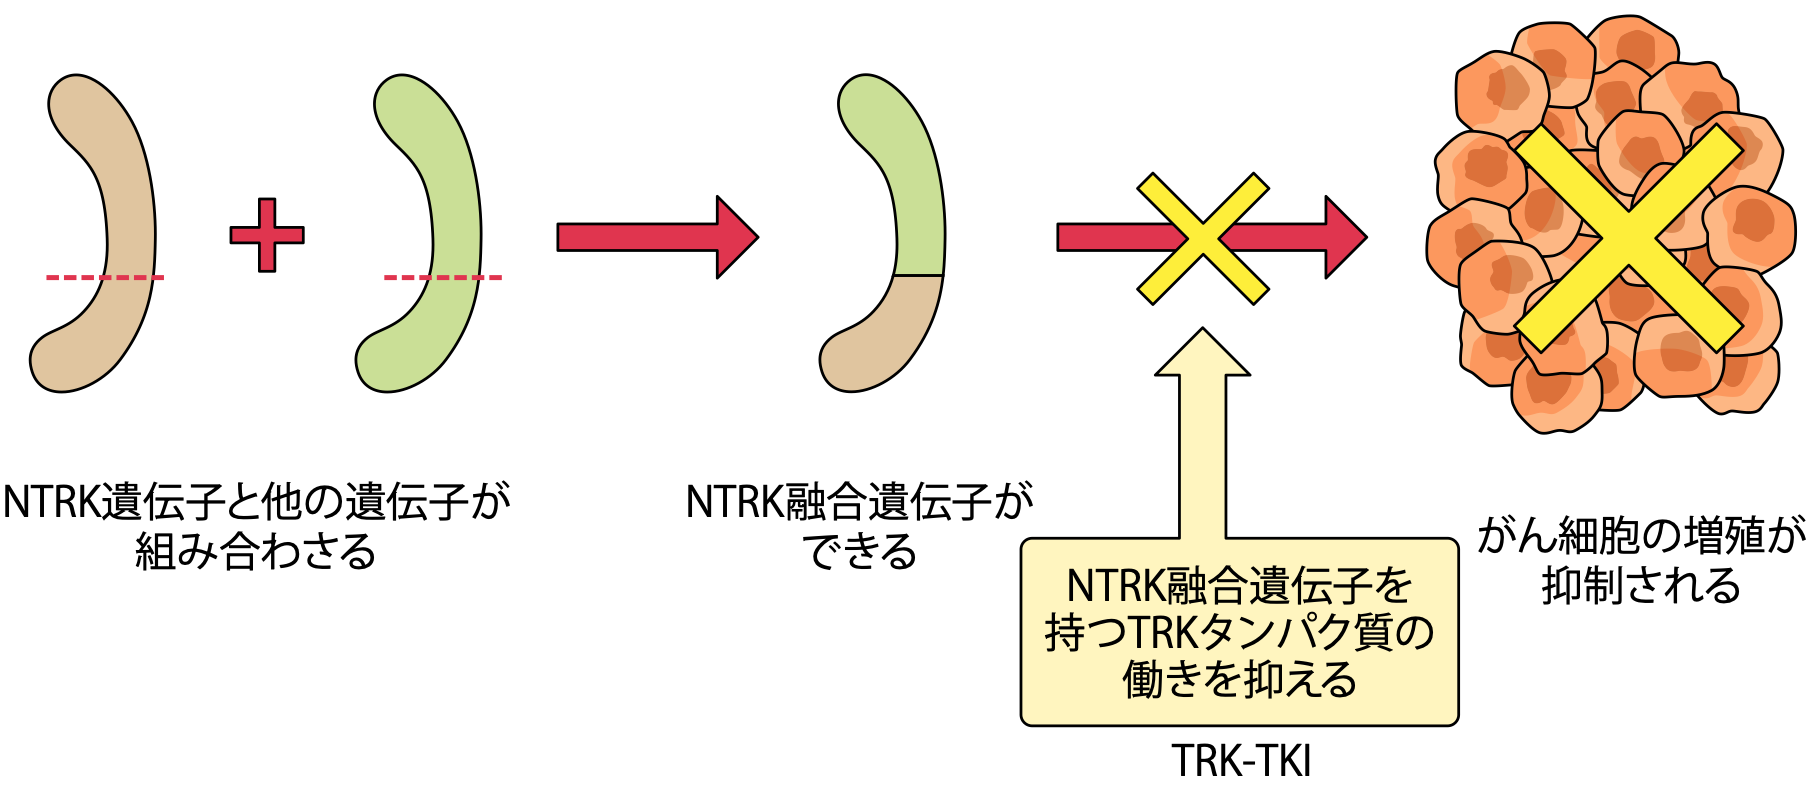 NTRK遺伝子融合がある人に効果が期待できる「TRK阻害薬」